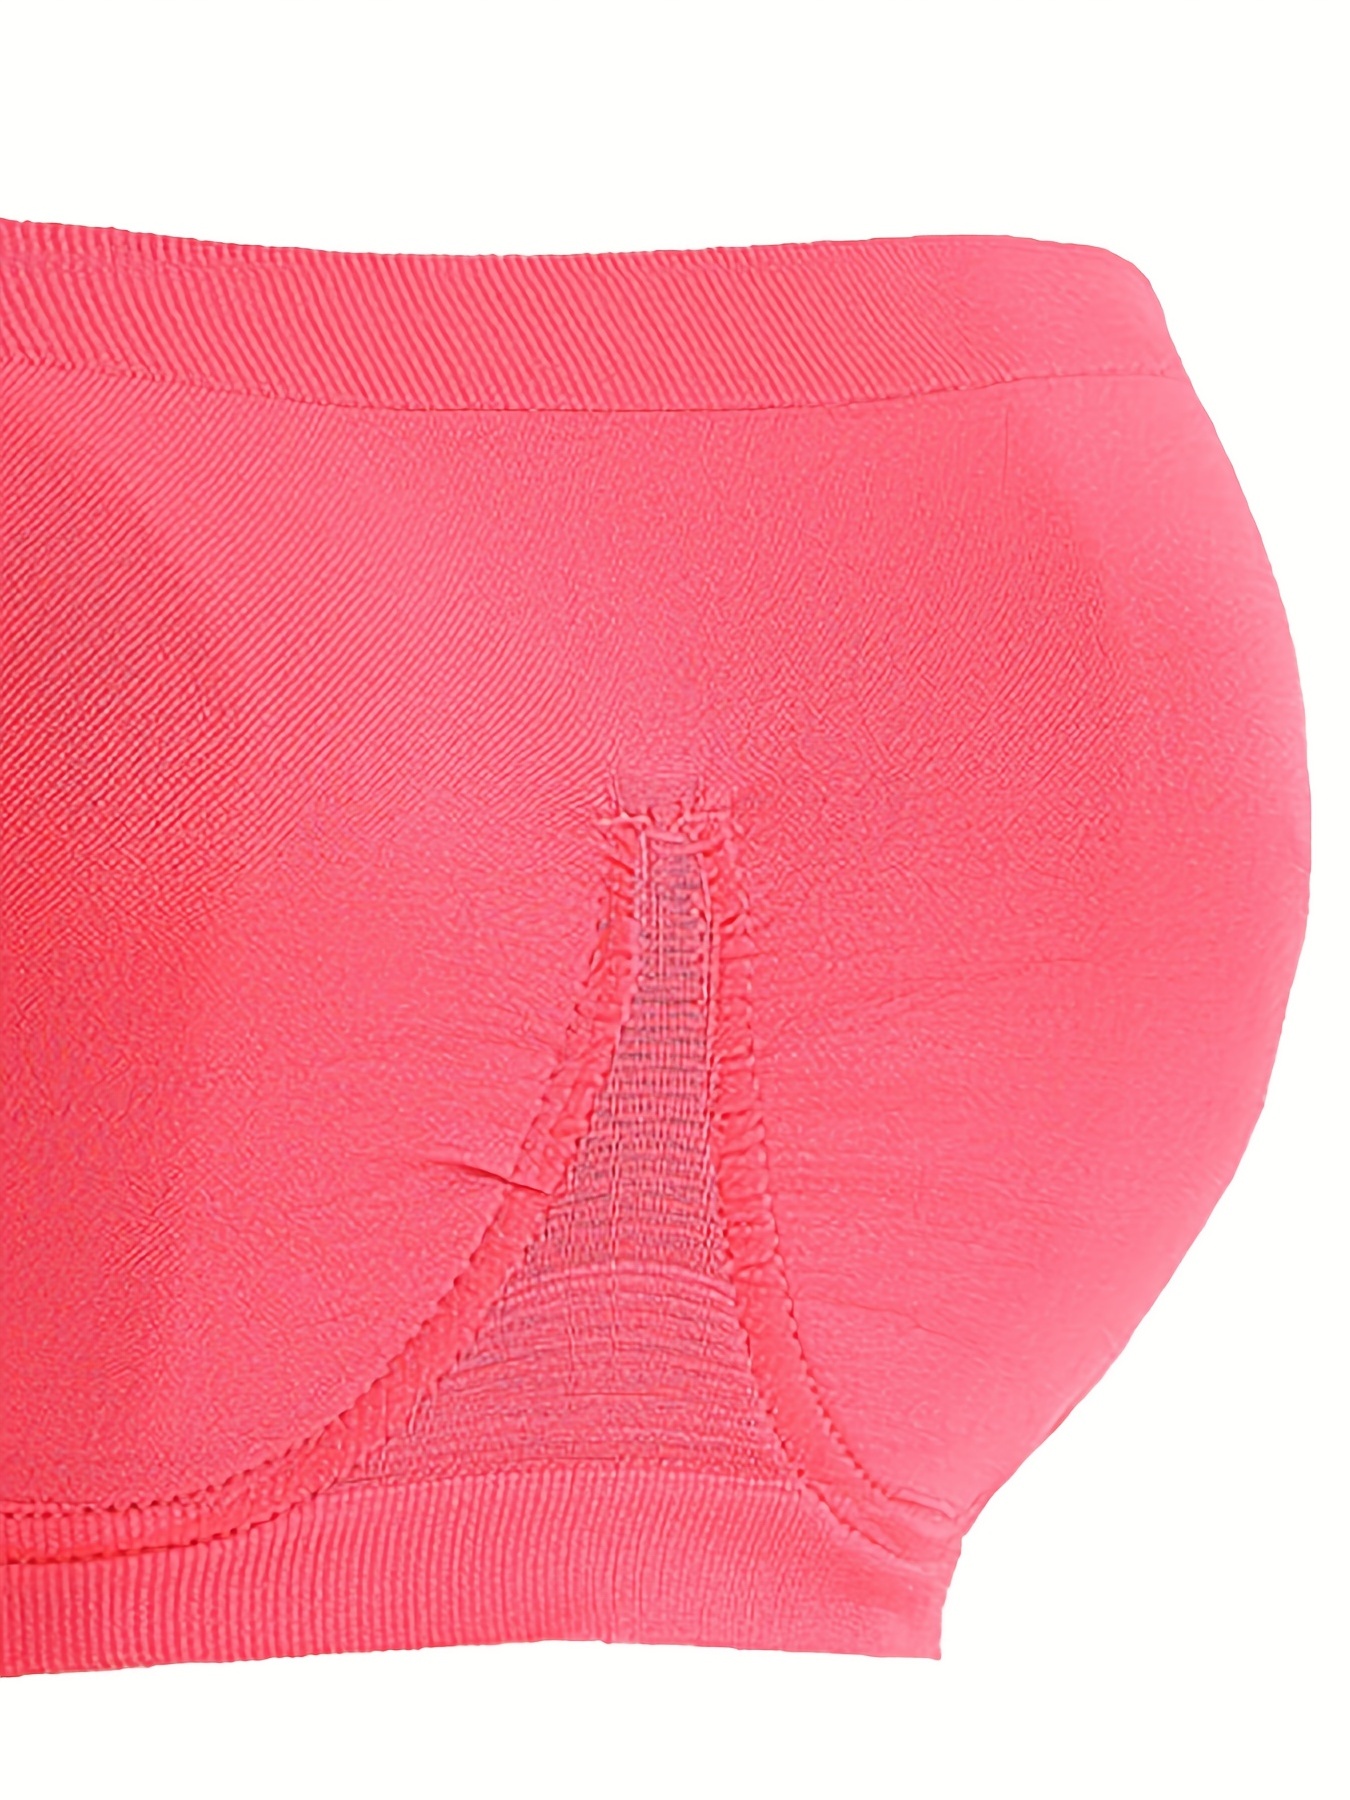 Qcmgmg Strapless Bras for Women Push Up Bandeaus Comfort Seamless T-Shirt  Bra Hot Pink XL 